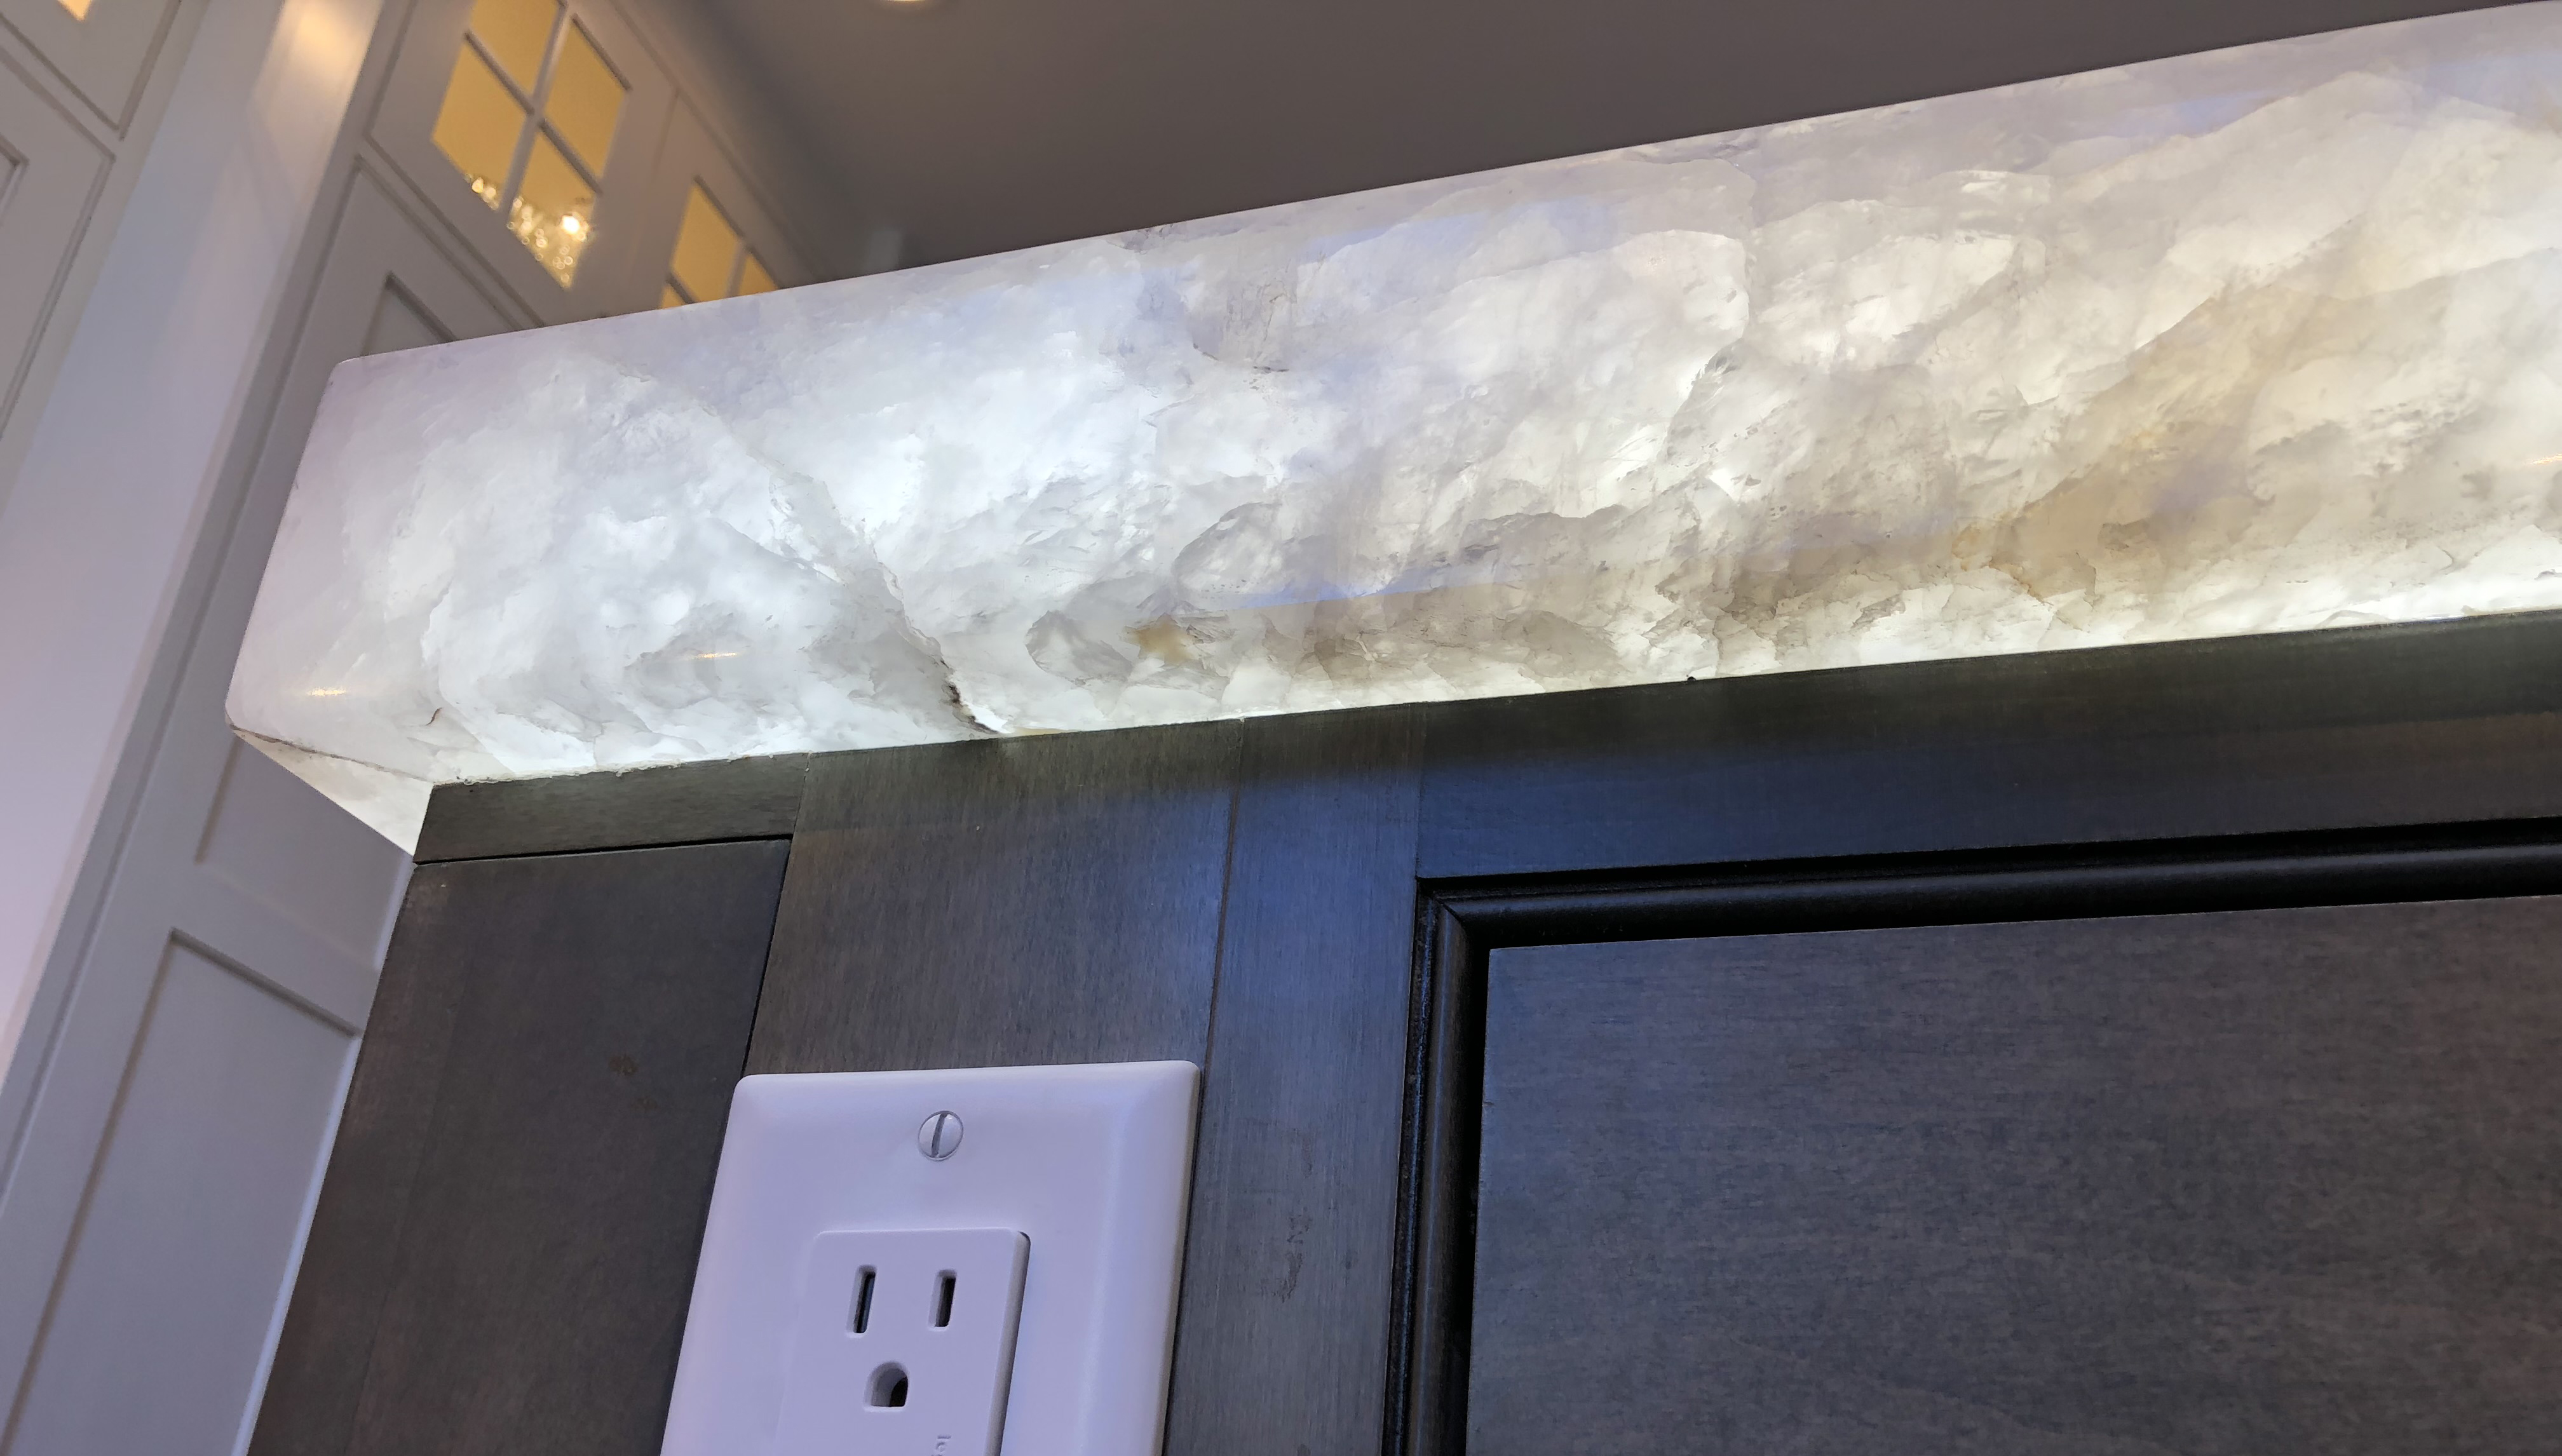 LED under countertop pannel. quartz glowing, kitchen countertop